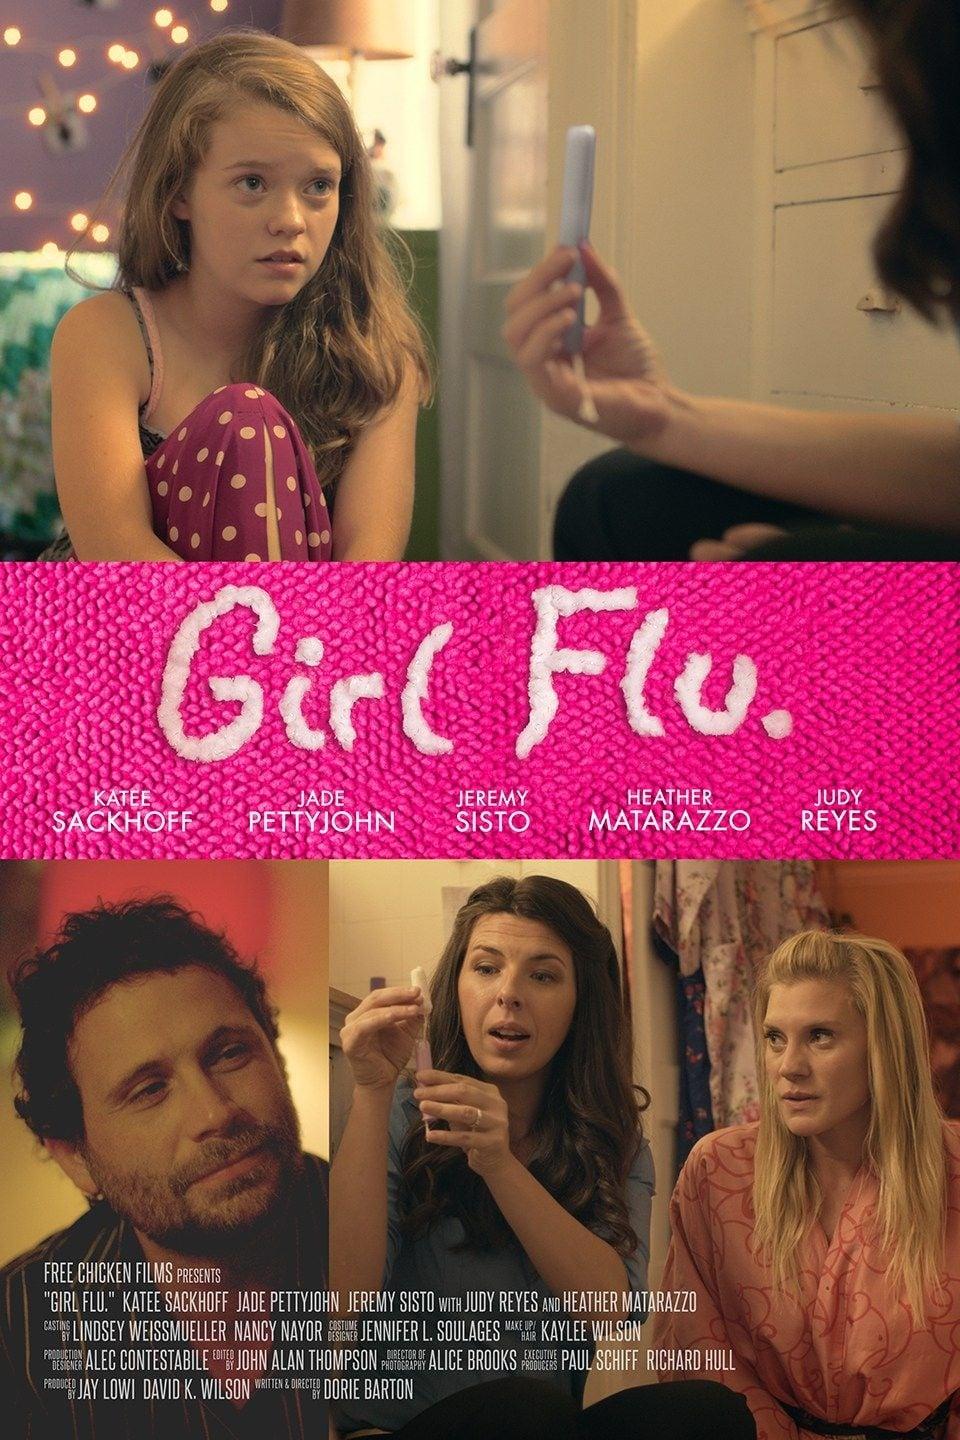 Girl Flu. poster